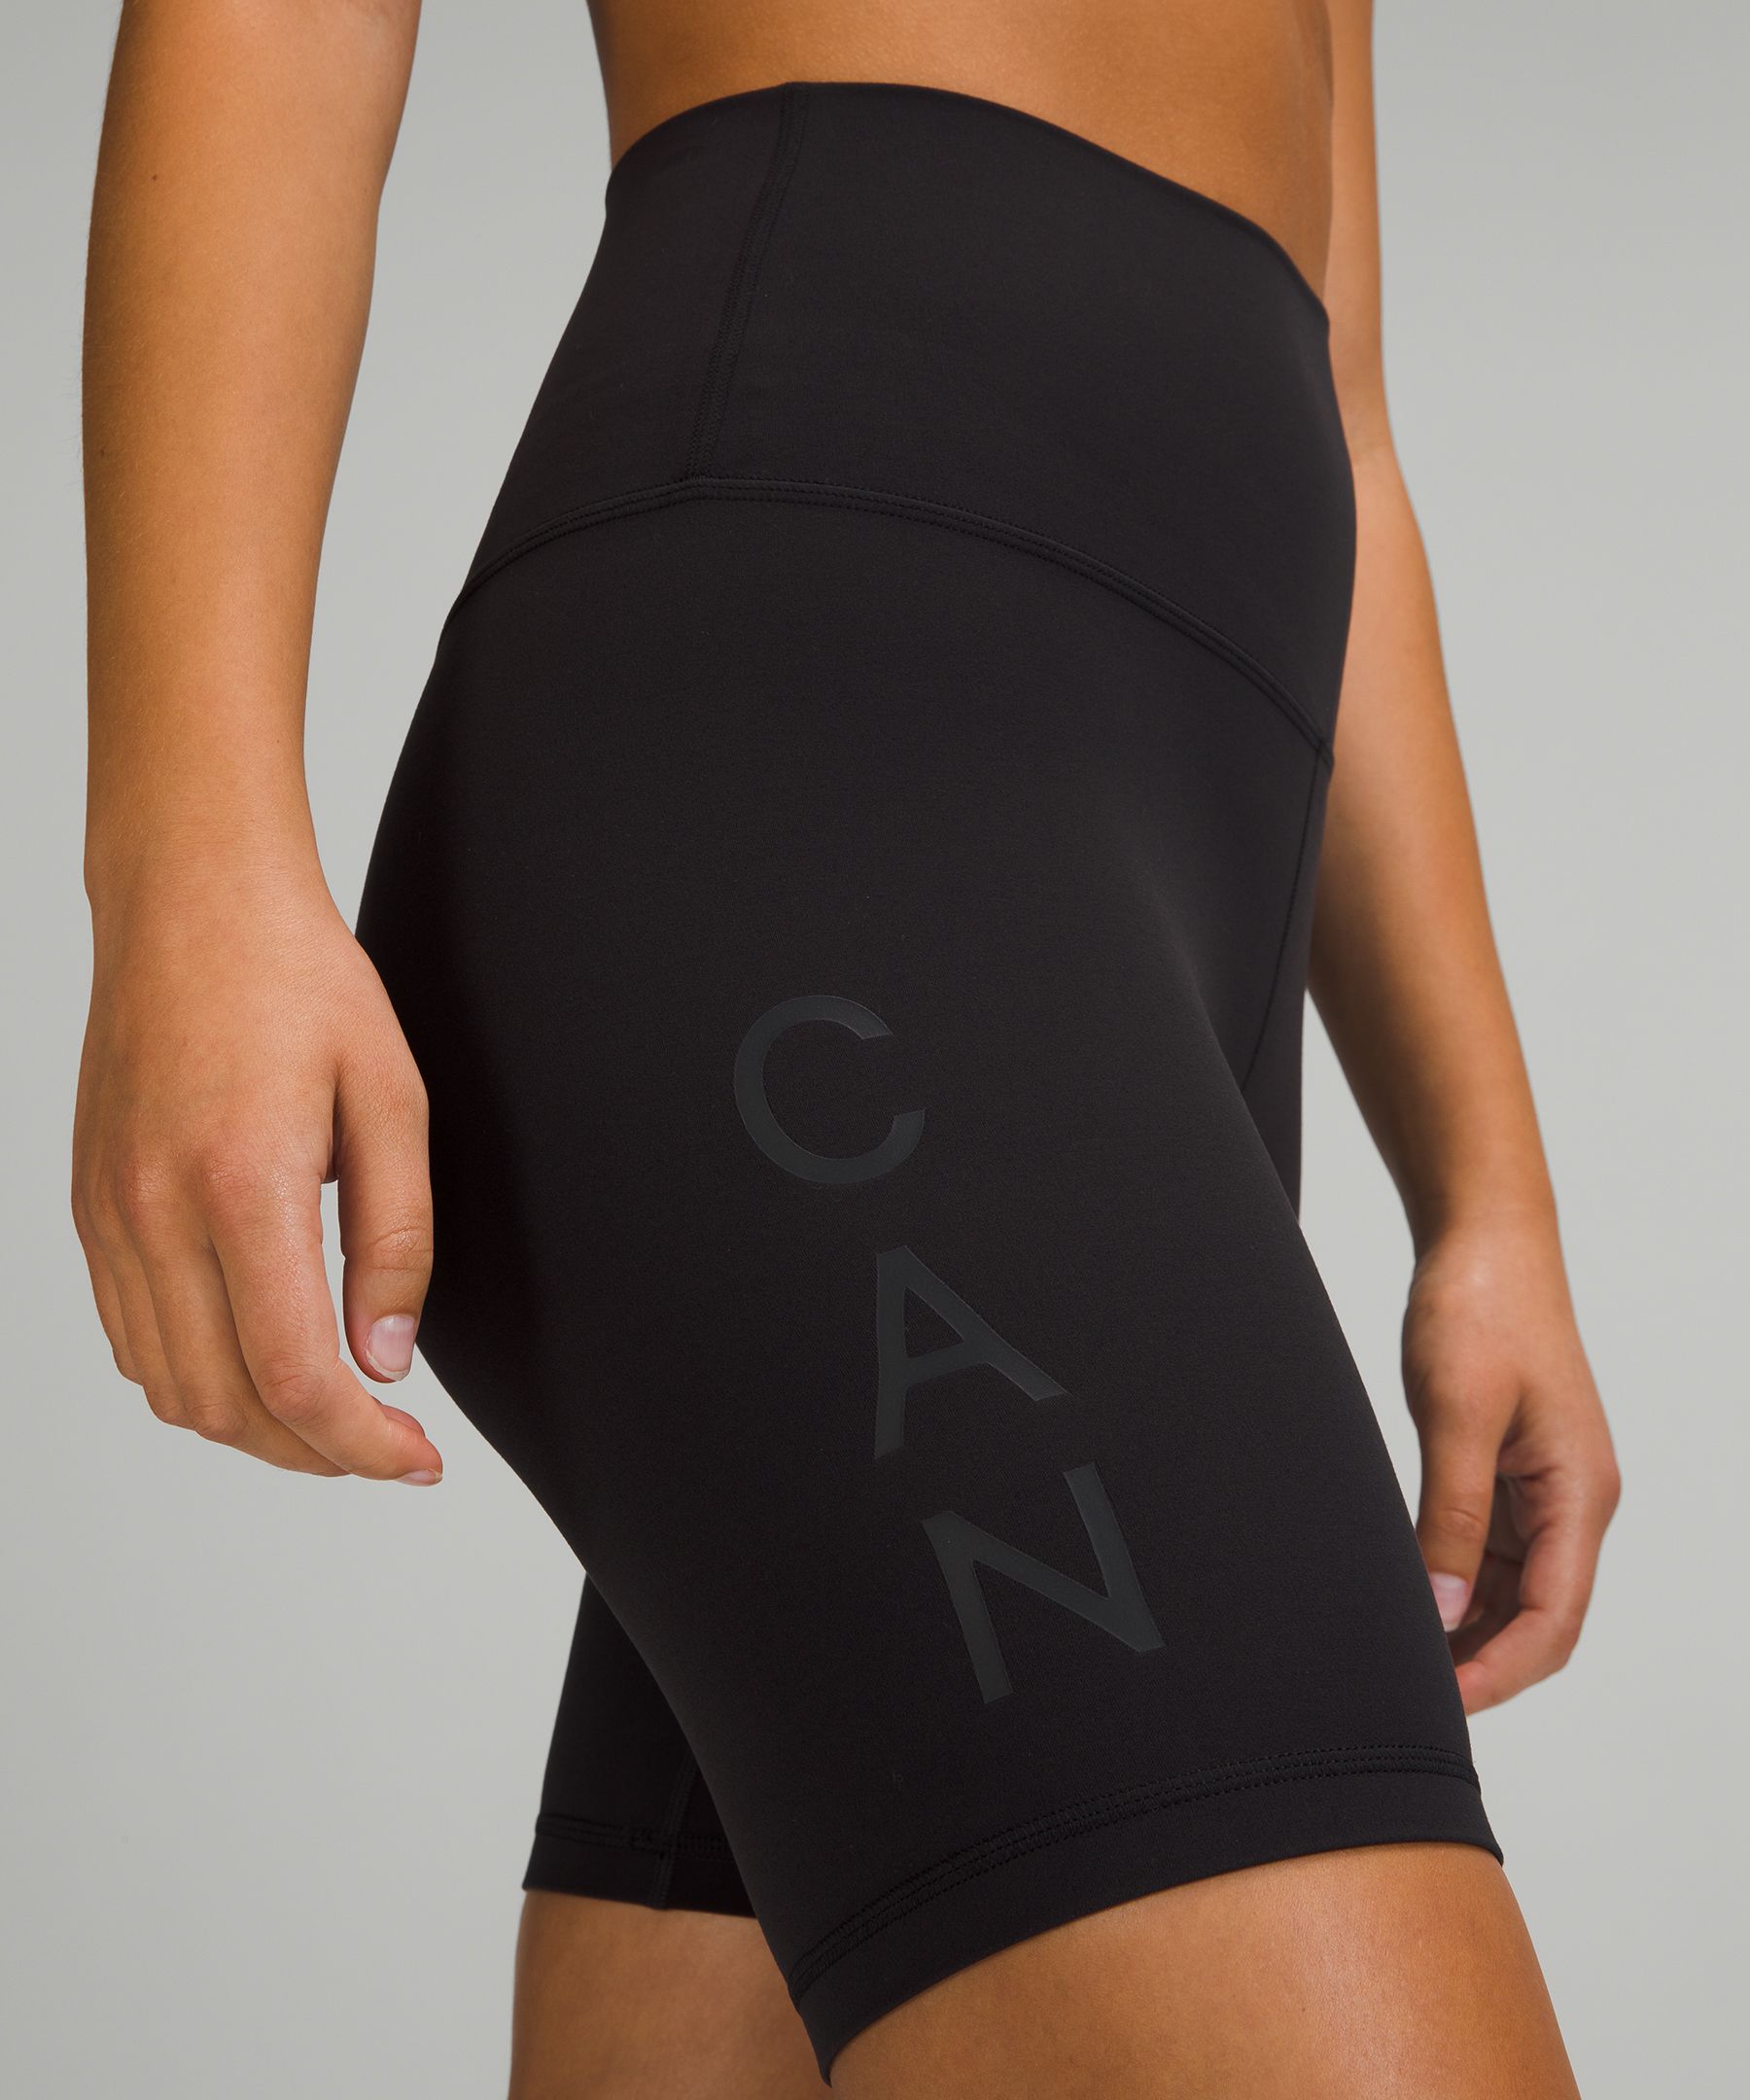 Lululemon Black Booty Shorts Womens Size 8 -  Canada